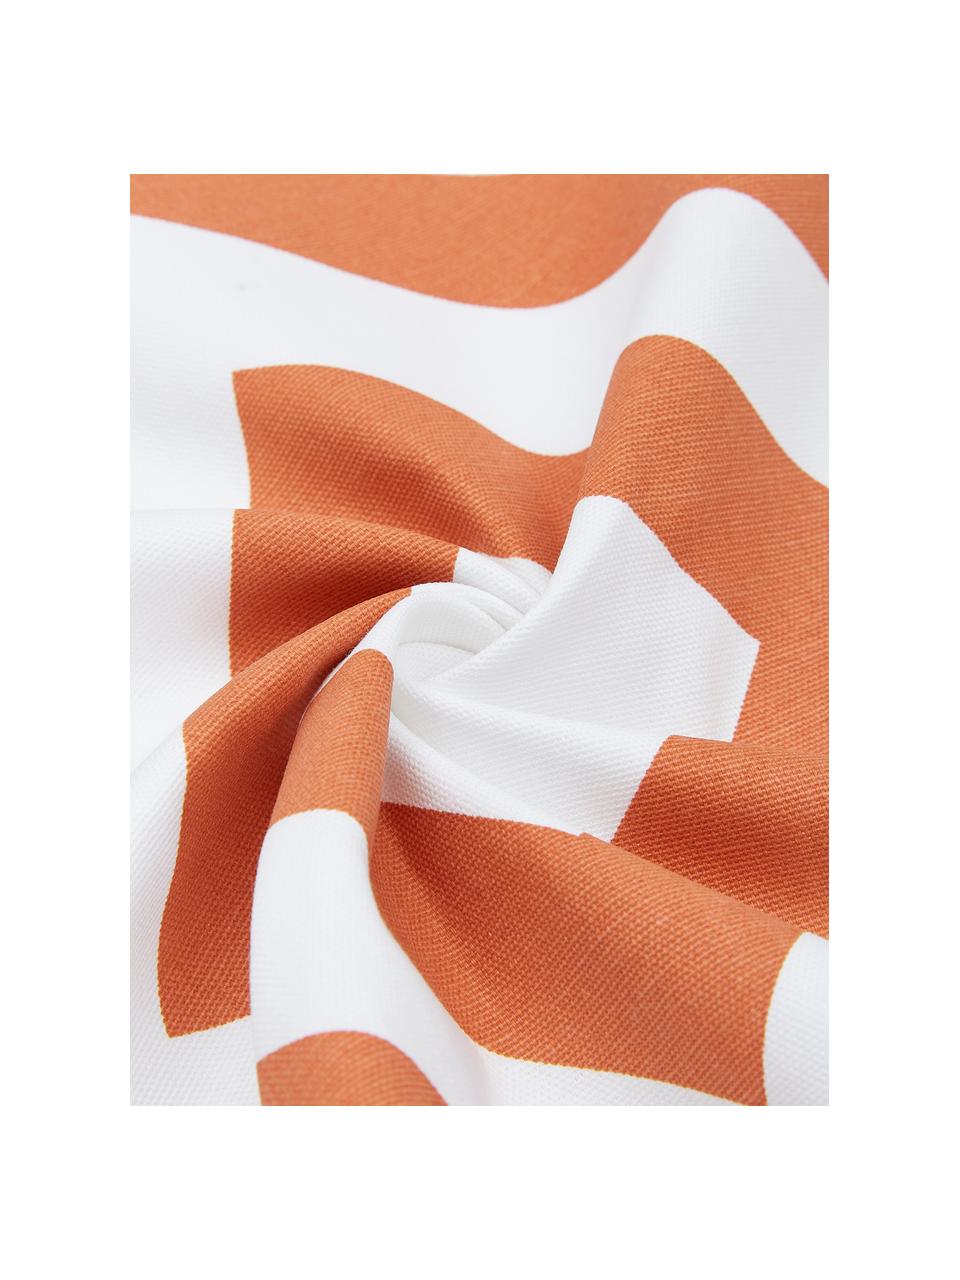 Federa arredo con motivo grafico arancione/bianco Sera, 100% cotone, Bianco, arancione, Larg. 45 x Lung. 45 cm